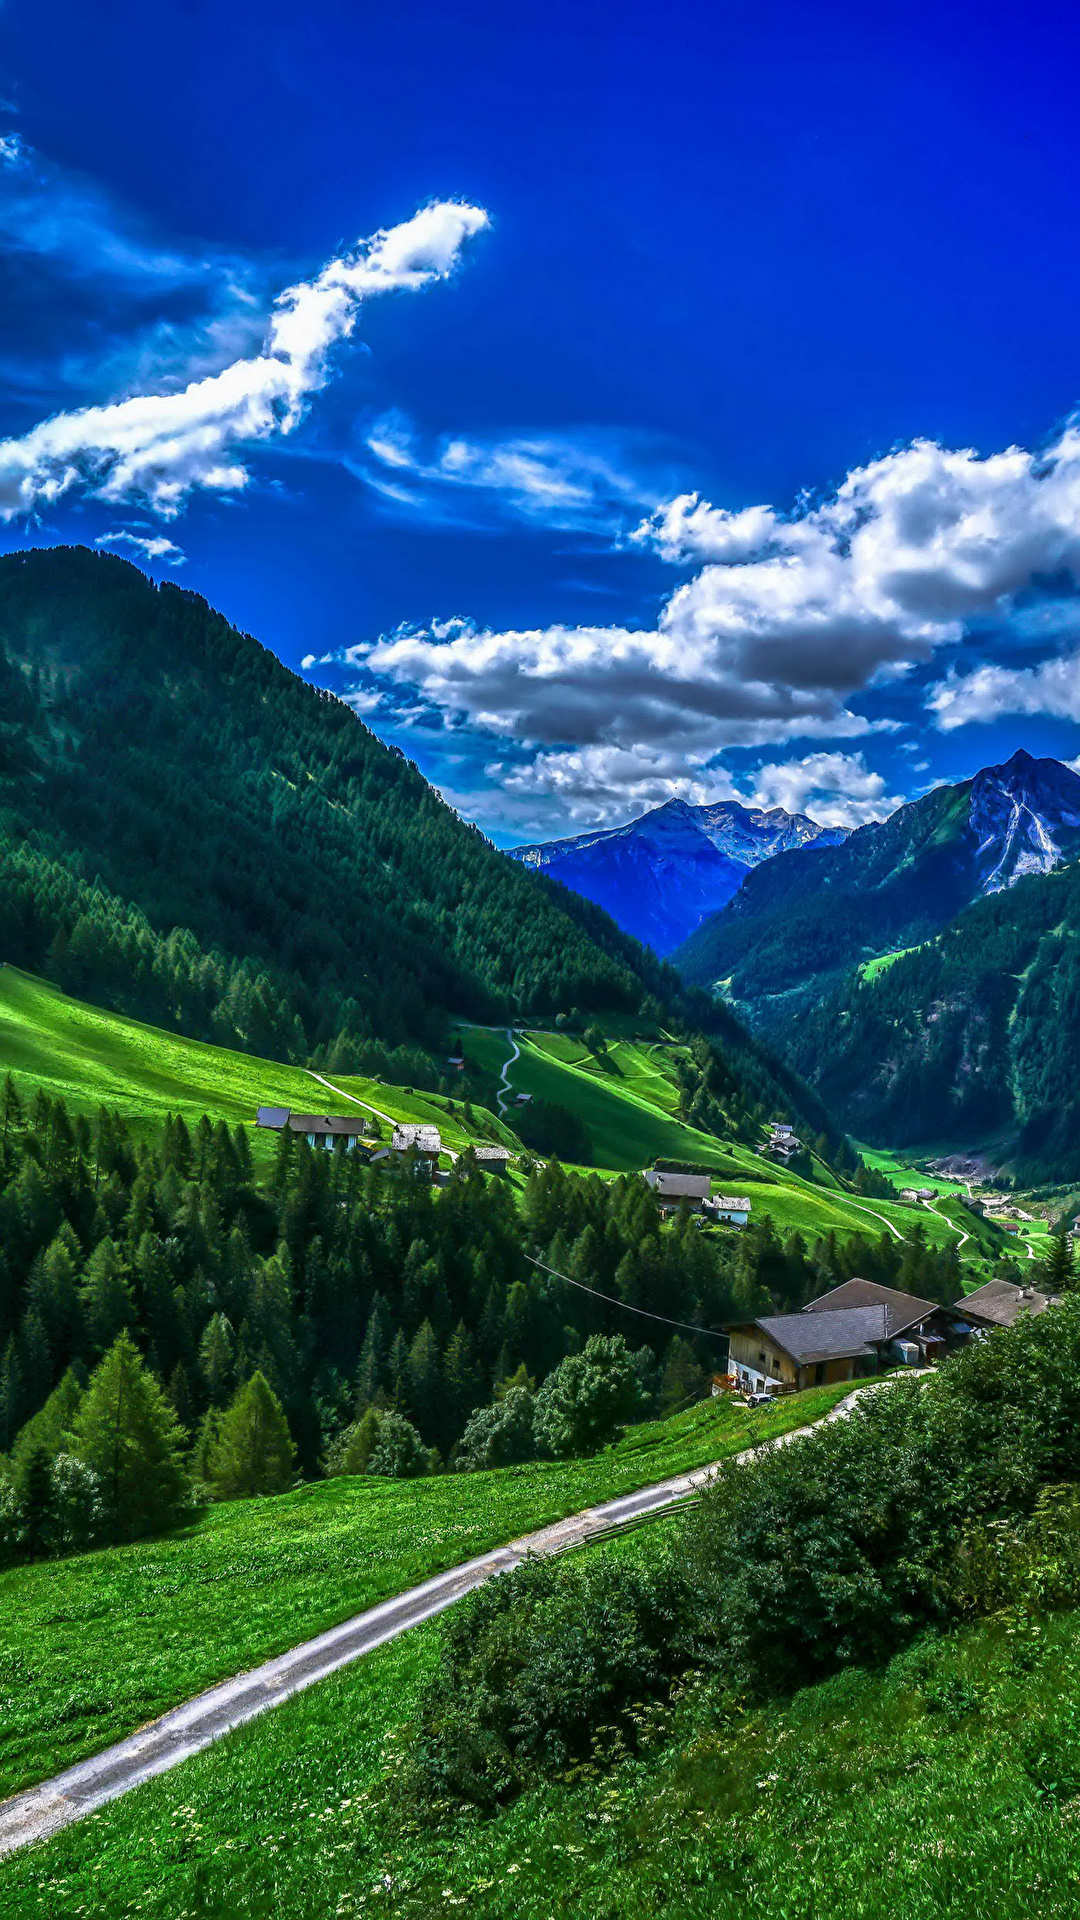 壁紙 1080x1920 イタリア 山 森林 空 風景写真 Bolzano 草 雲 自然 ダウンロード 写真